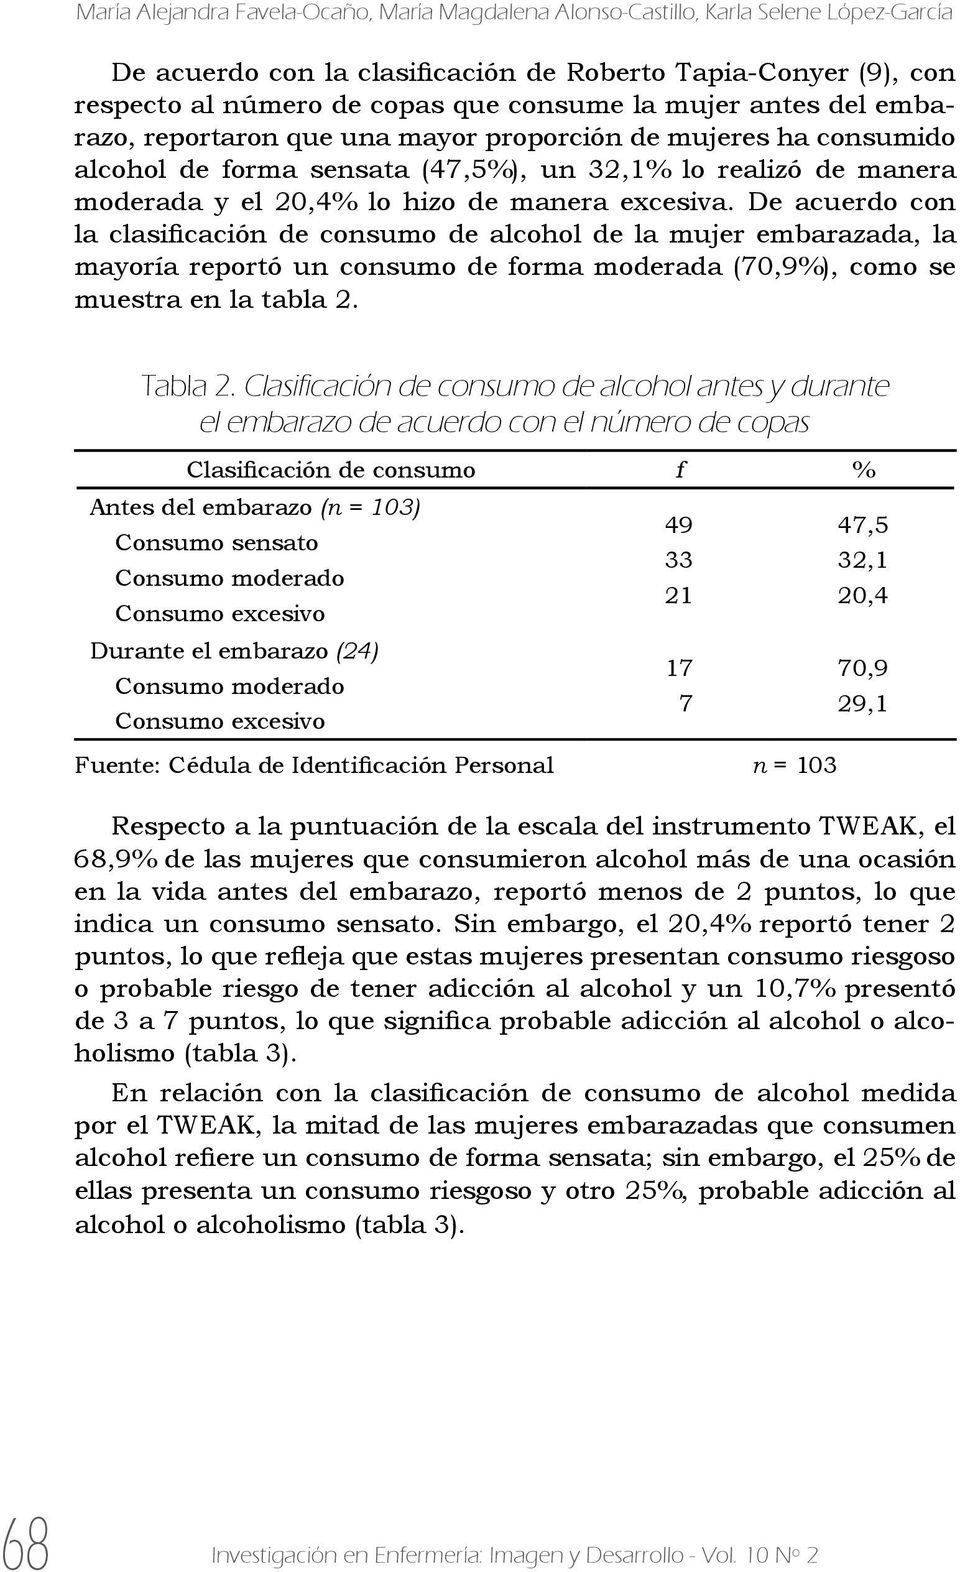 De acuerdo con la clasificación de consumo de alcohol de la mujer embarazada, la mayoría reportó un consumo de forma moderada (70,9%), como se muestra en la tabla 2. Tabla 2.